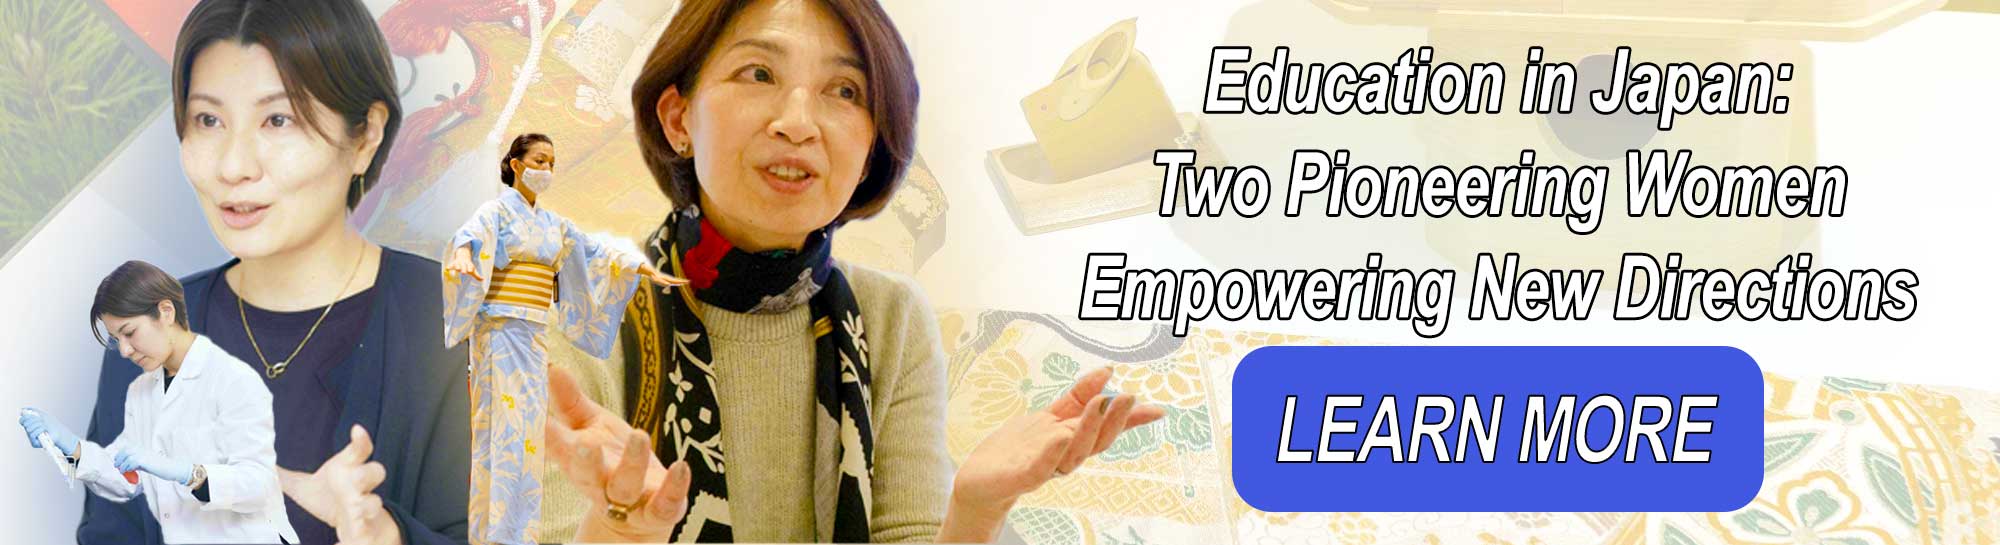 日本の教育: 新しい方向性に力を与える 2 人の先駆的な女性